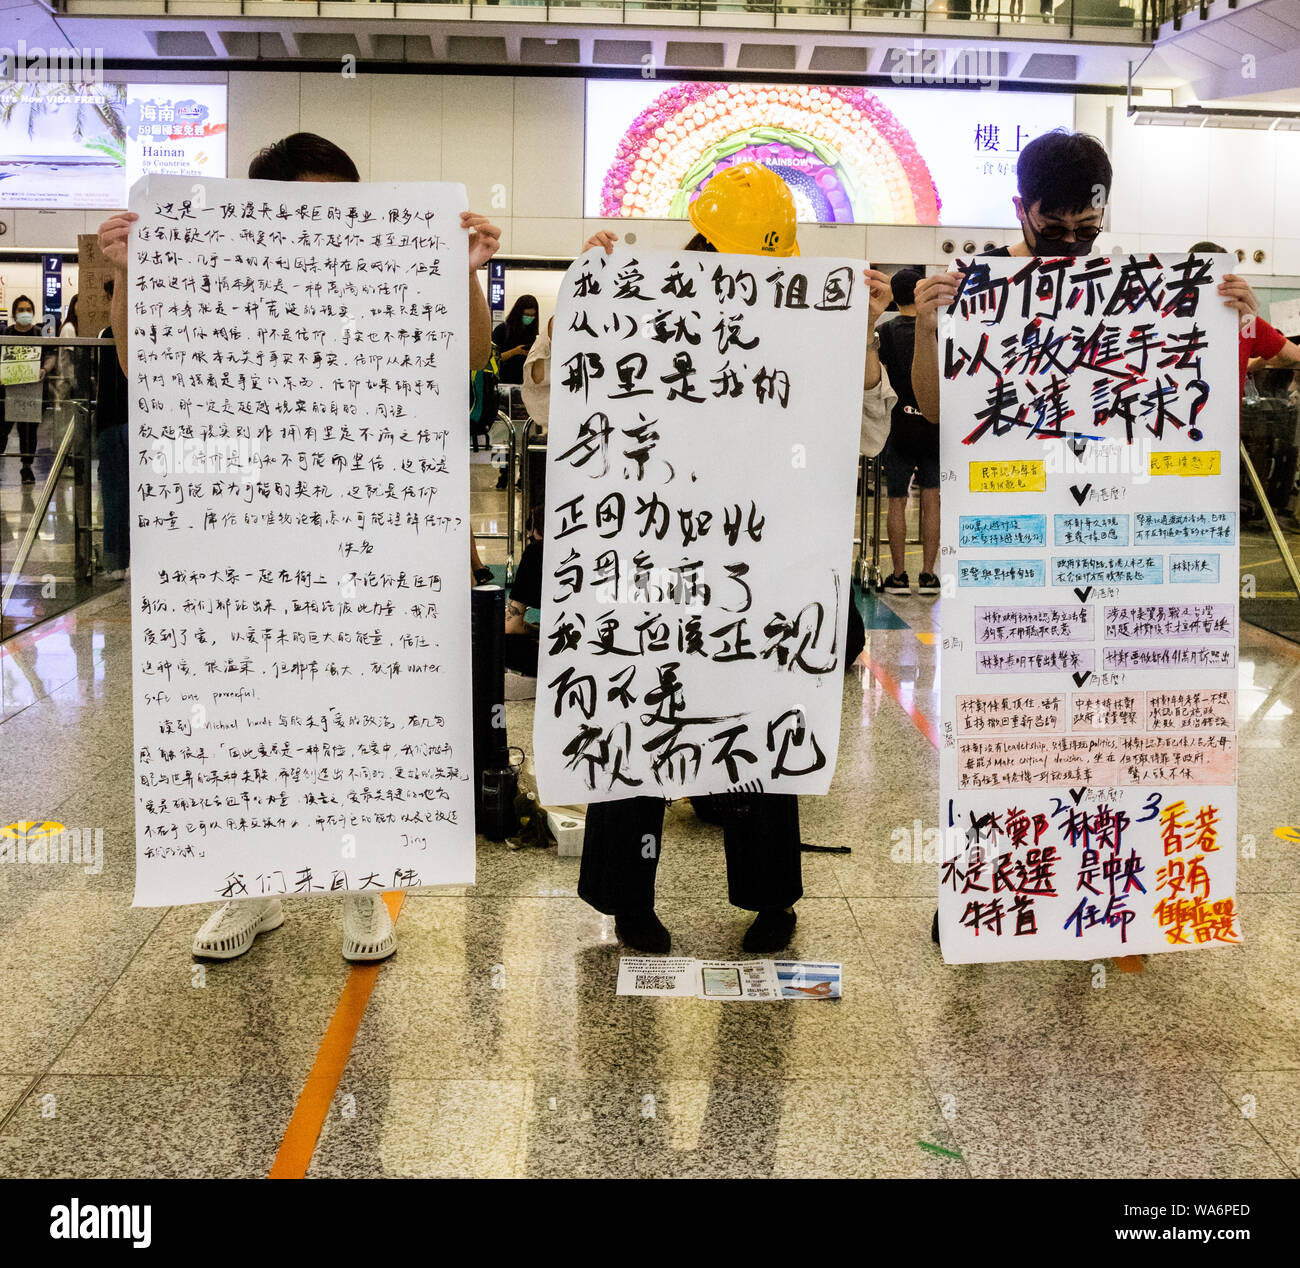 Affiches de protestation dans l'Aéroport International de Hong Kong, 2019. Banque D'Images